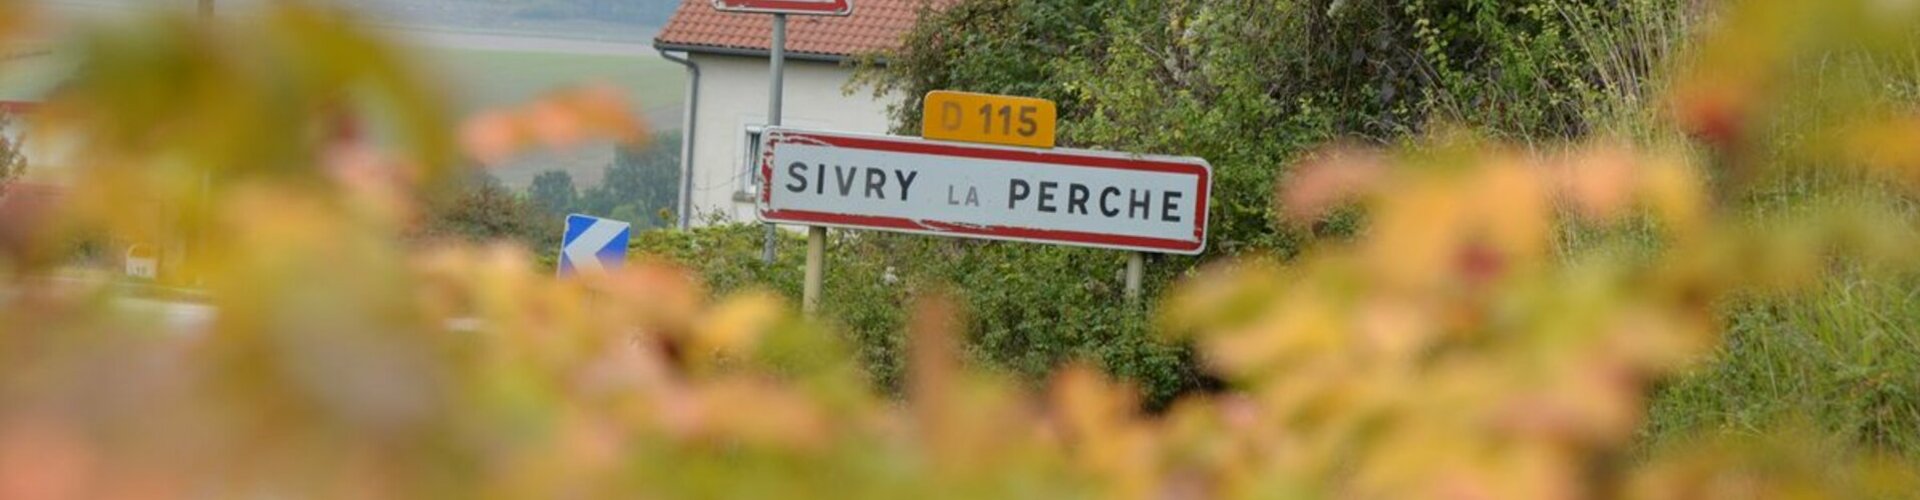 Commune de Sivry-la-Perche